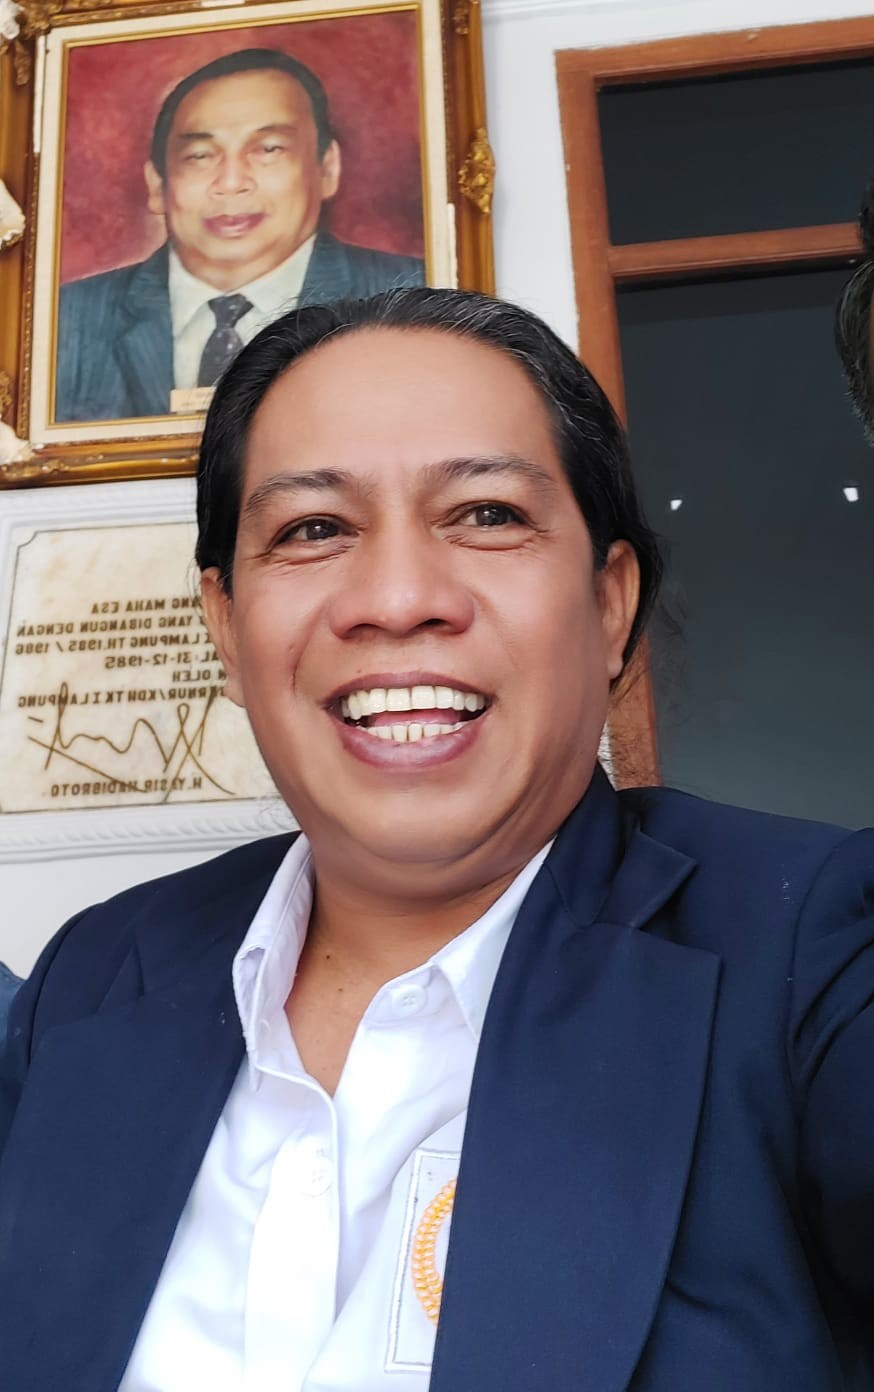 Mantan Ketua KI Lampung Juniardi Sayangkan Sikap Gubernur Larang Wartawan Merekam 